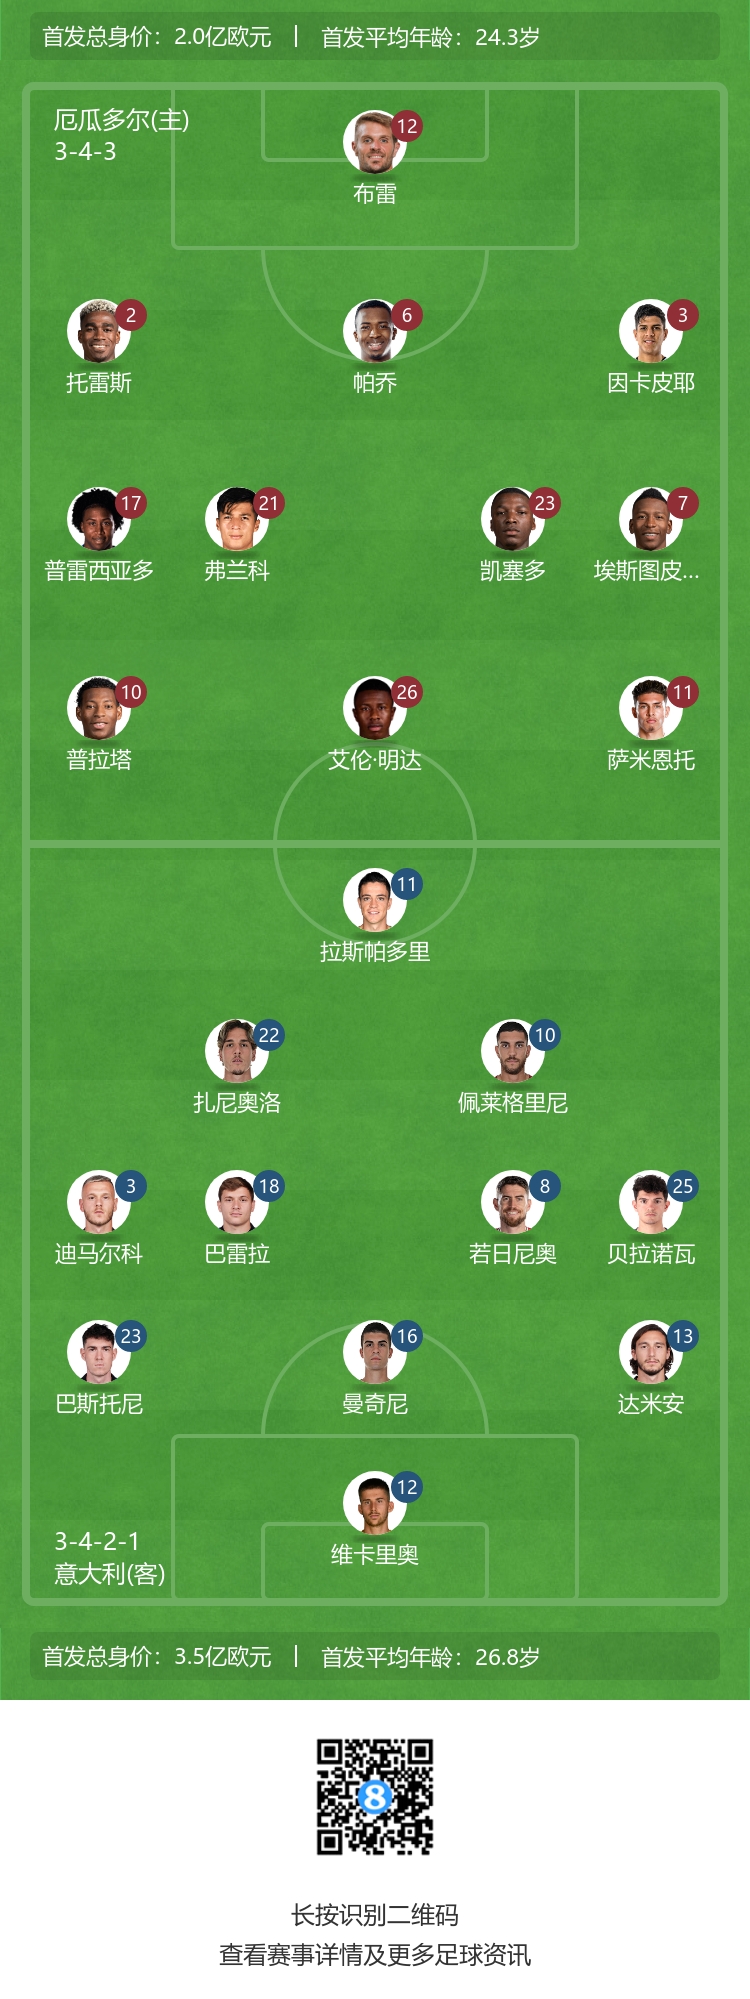 22岁的方昊：中国足球一定会越来越好